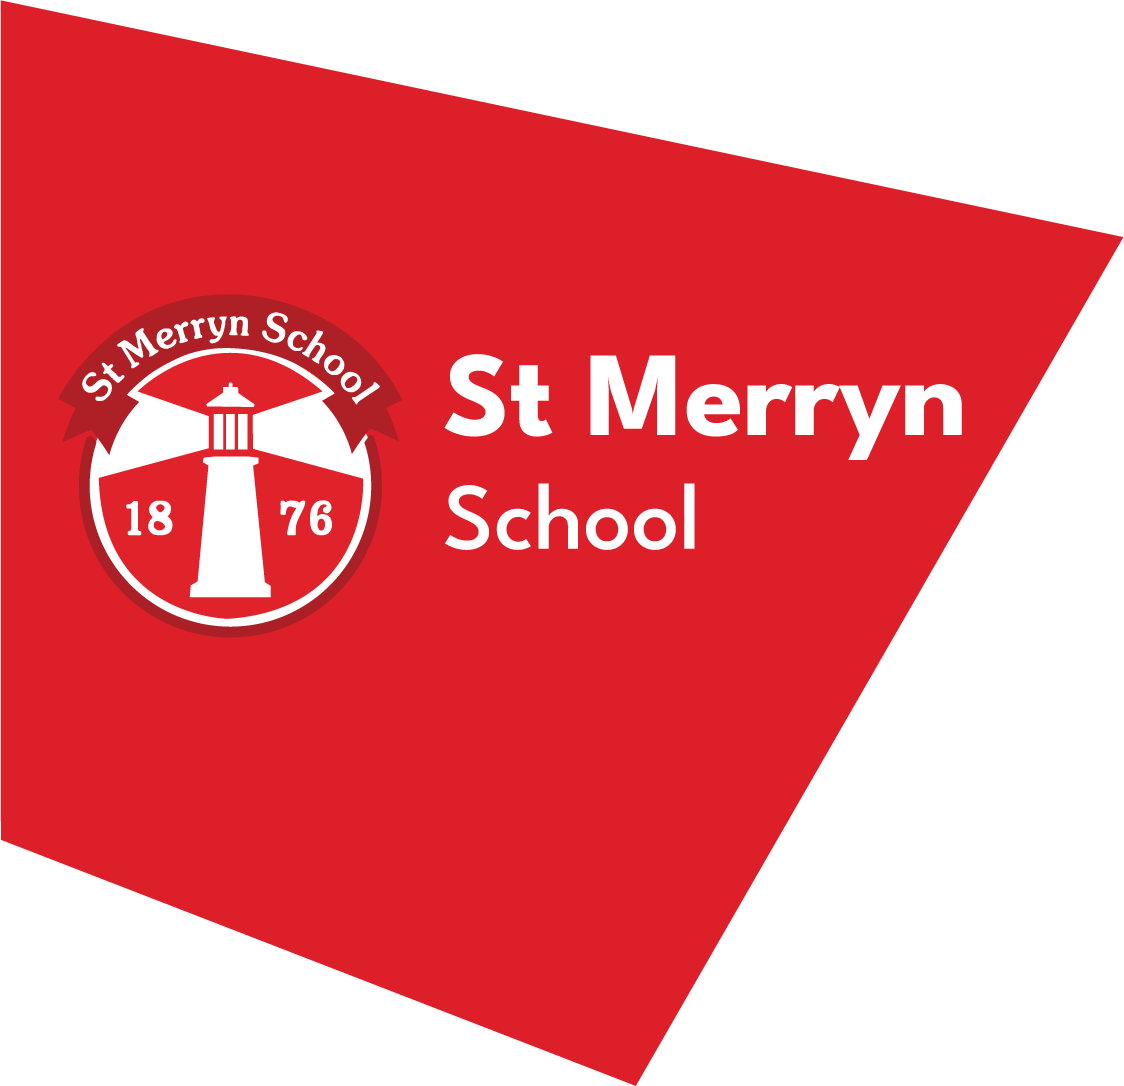 St Merryn School